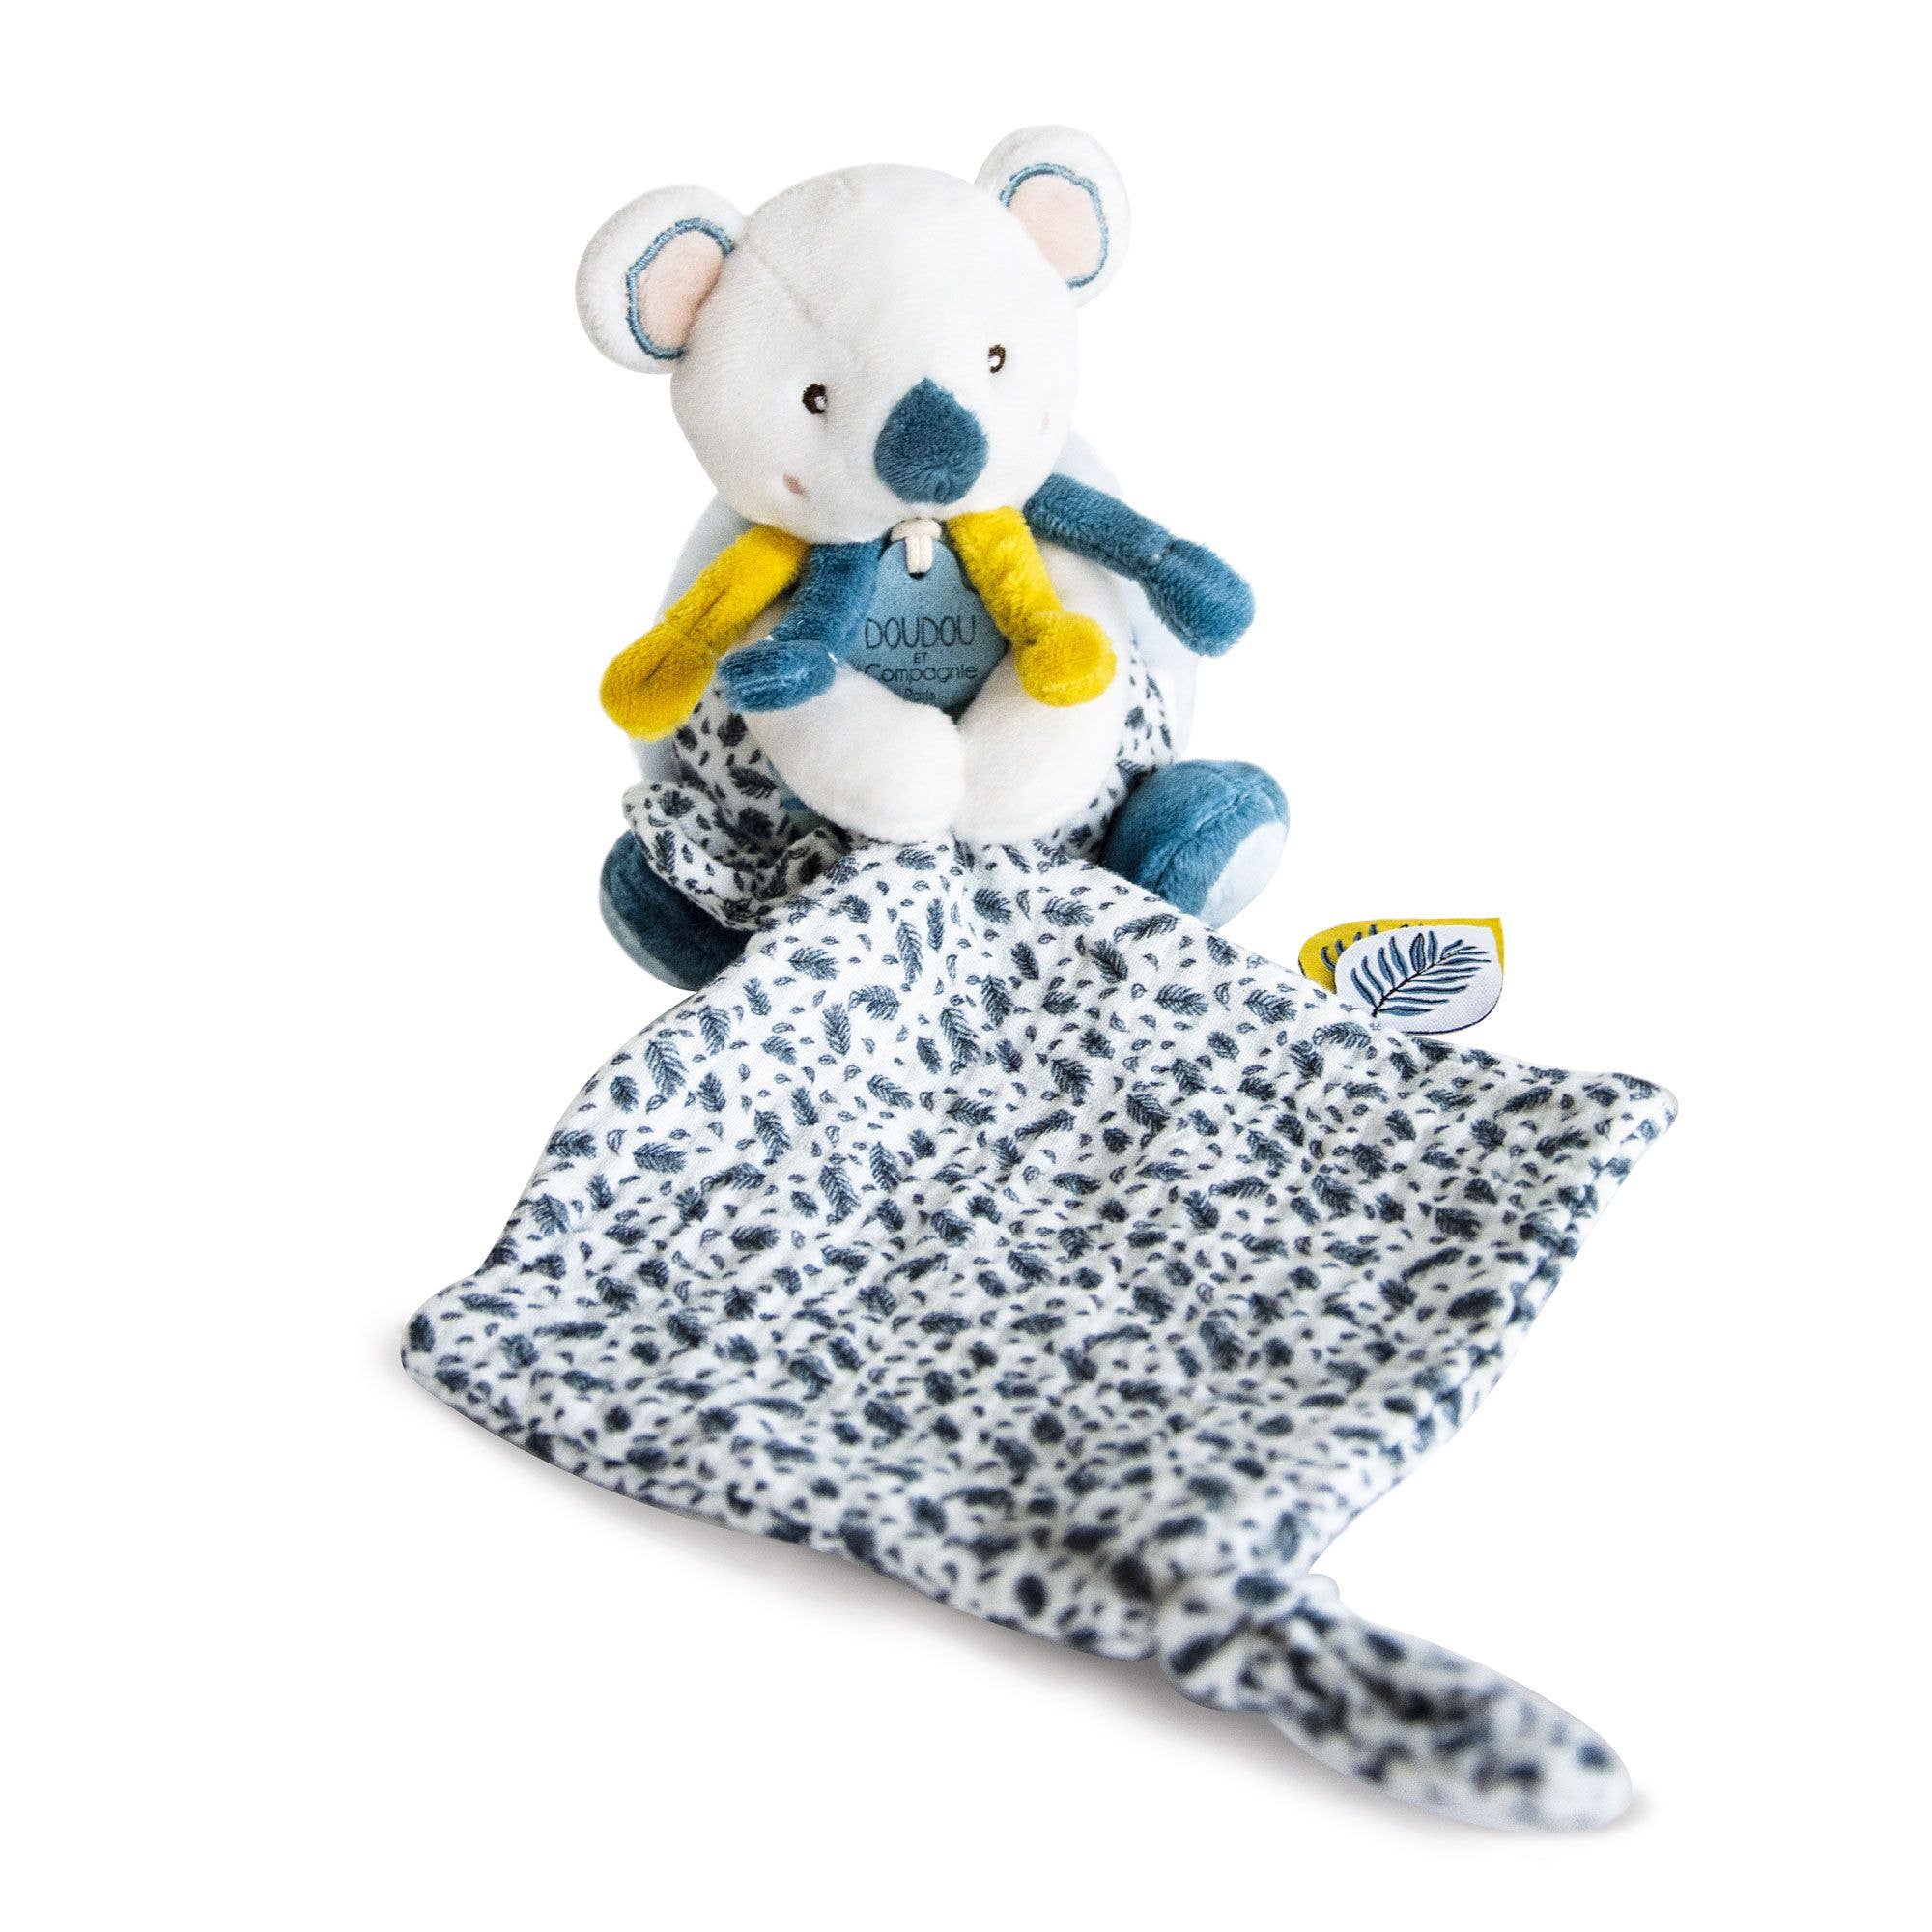 Yoka the Koala plush toy with safety blanket